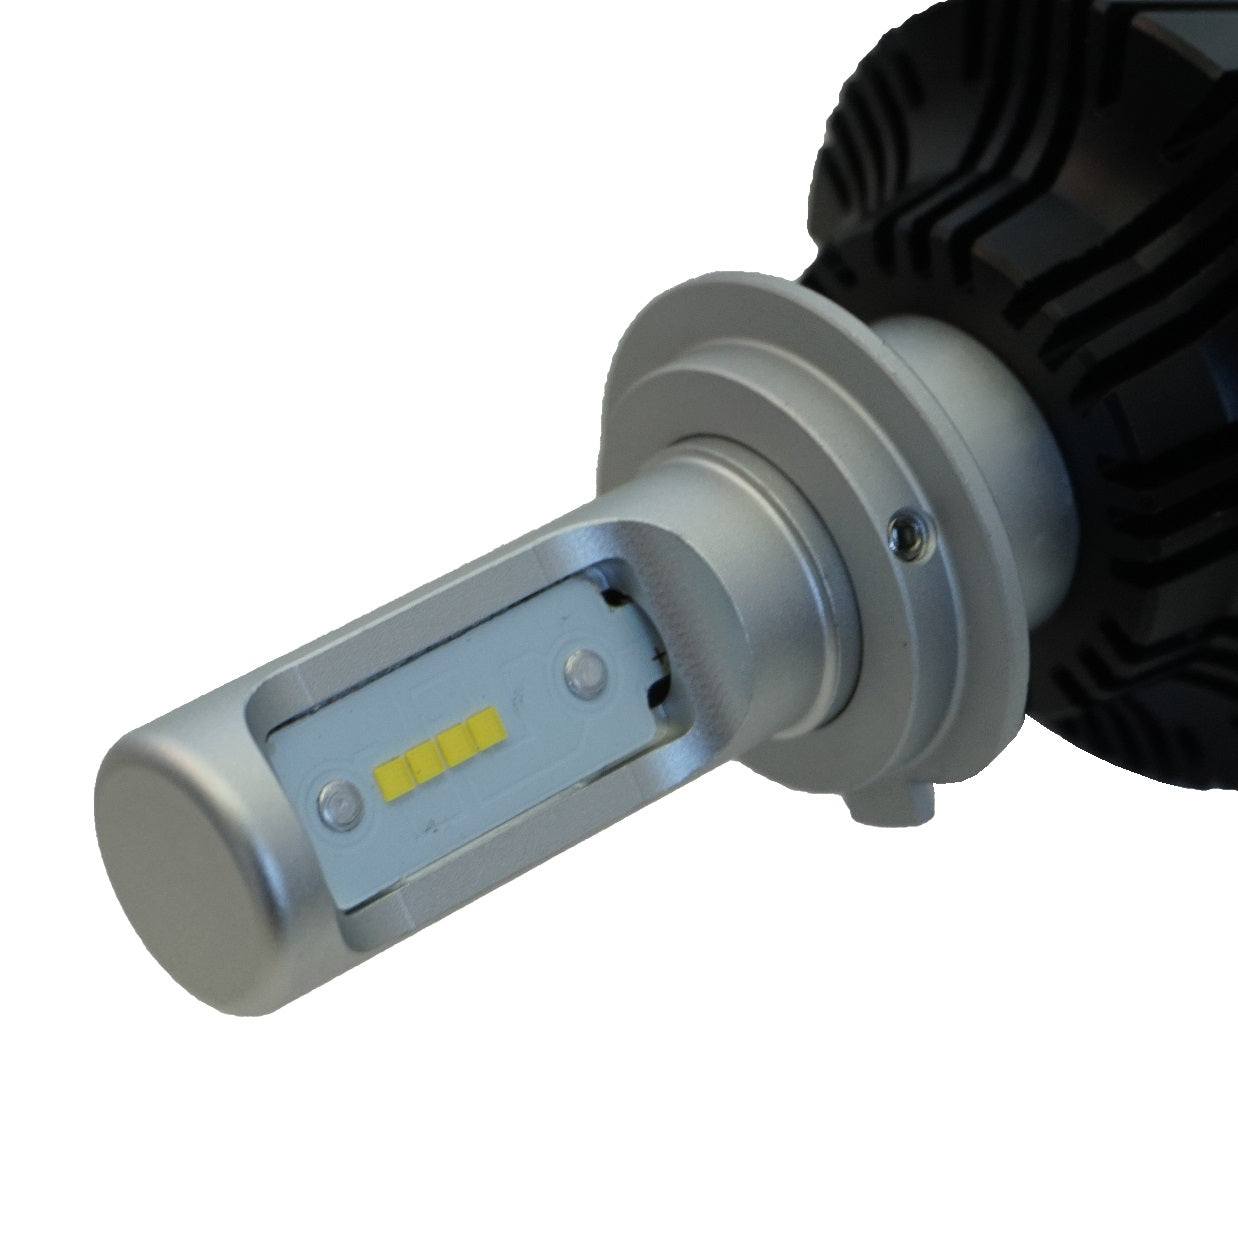 Smart Fortwo W450 LED Headlight & Sidelight Upgrade Kit – Powerful UK